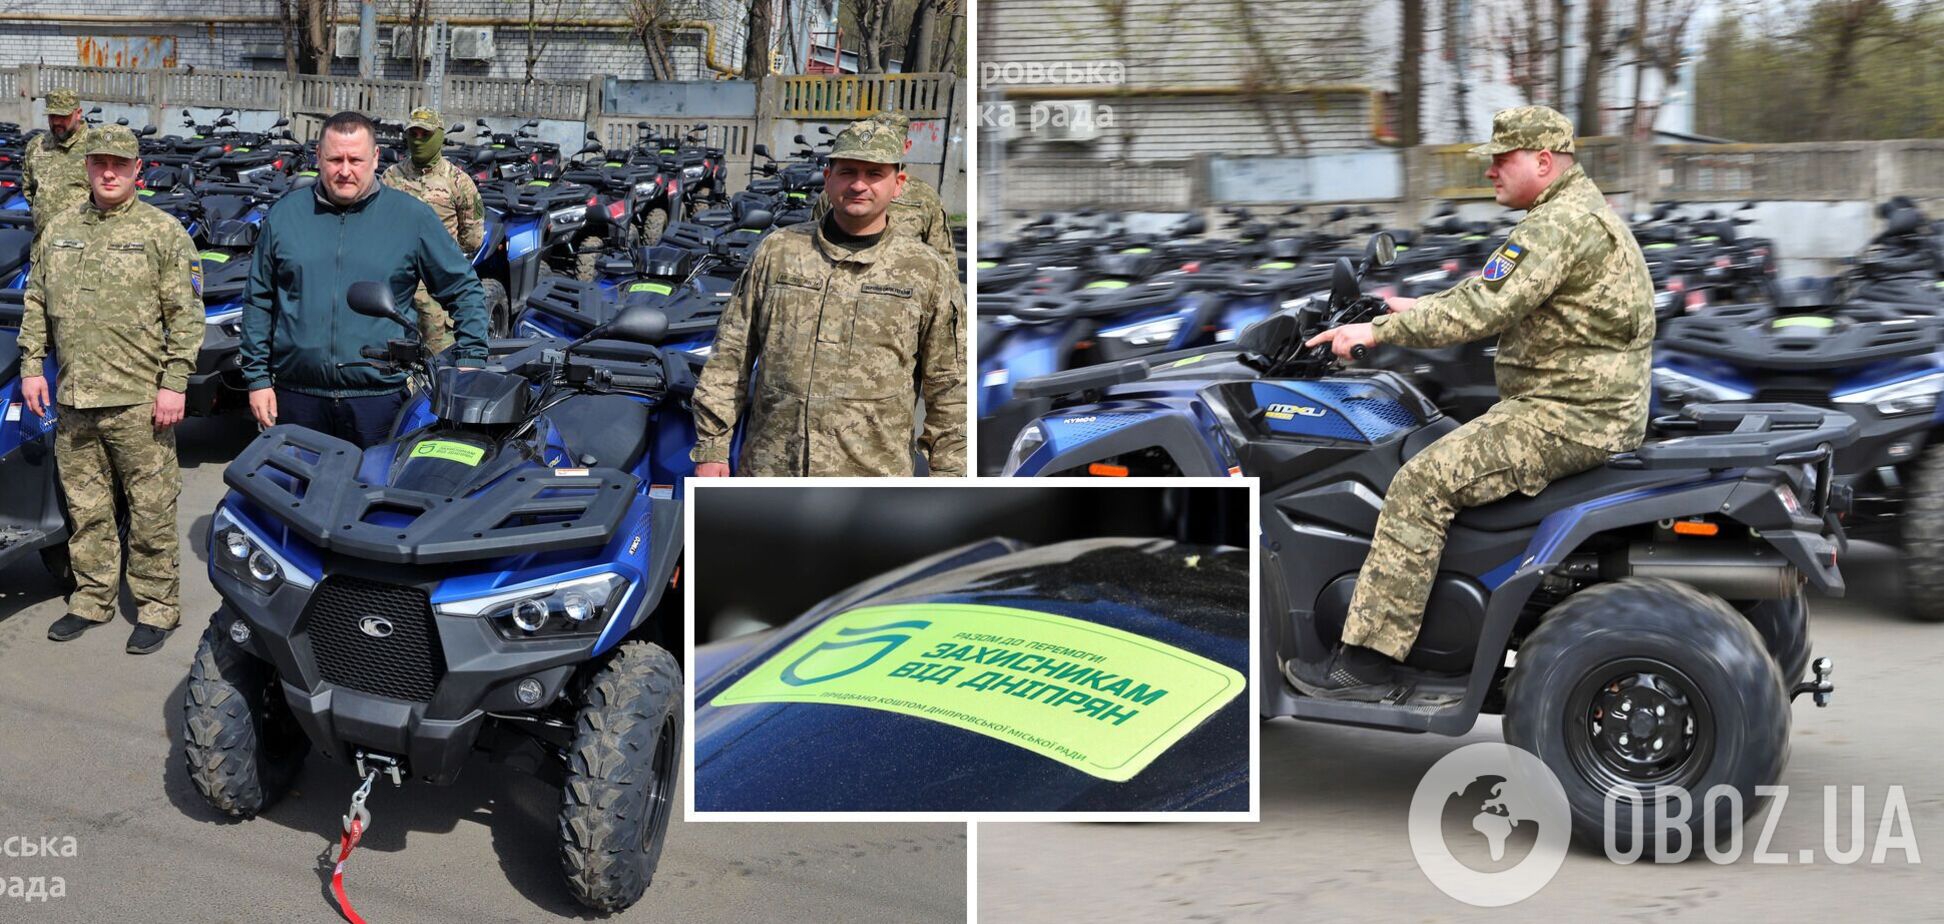 Дніпро вже надав Силам оборони сотню нових квадроциклів та планує придбати ще стільки ж найближчим часом, – Філатов
